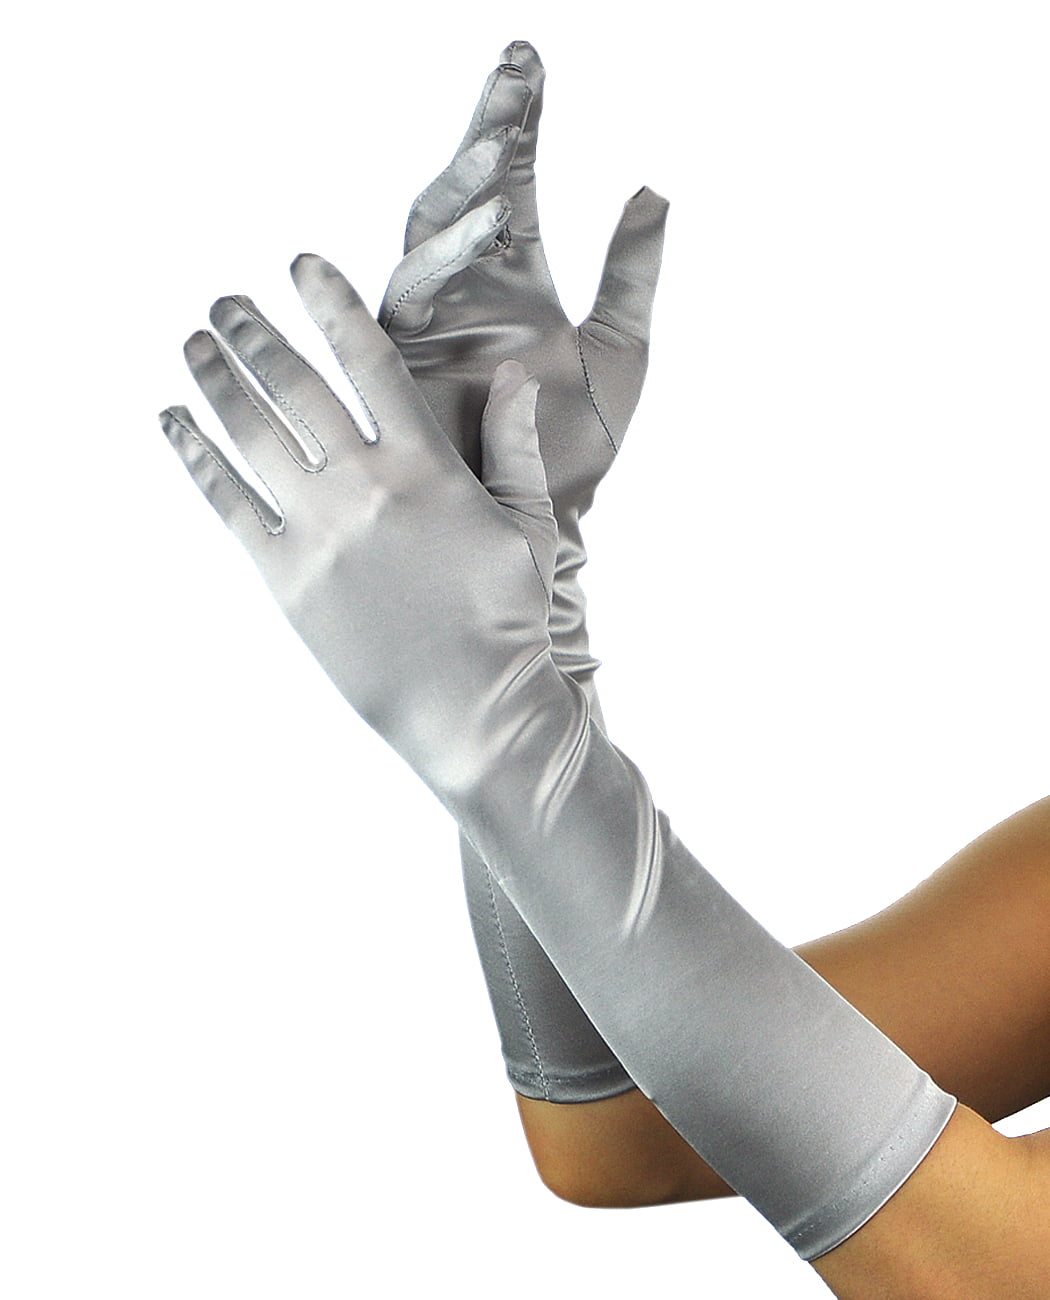 NYFASHION101 Solid Color Elegant Formal Arm Length Satin Gloves, Silver ...